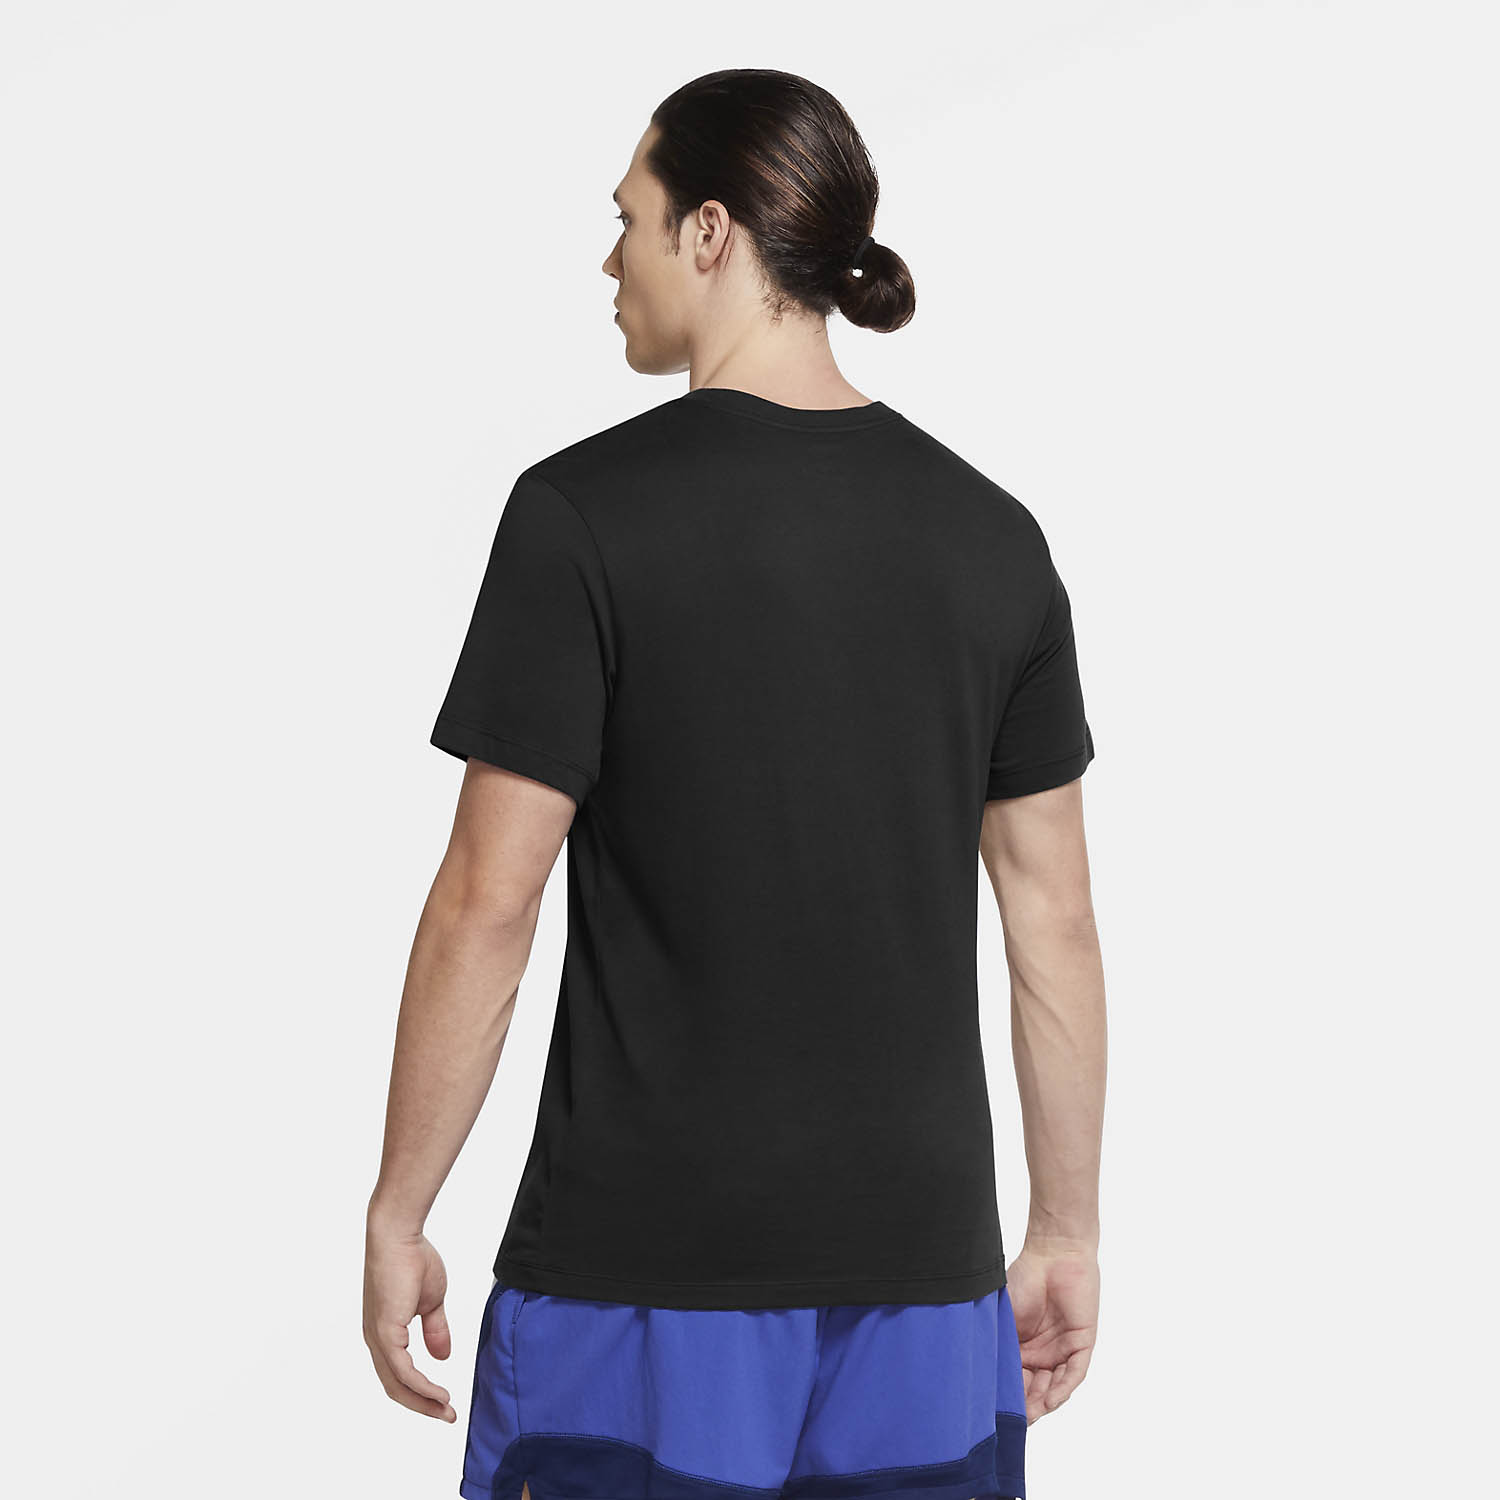 Nike Dri-FIT Swoosh Men's Training T-Shirt - Black